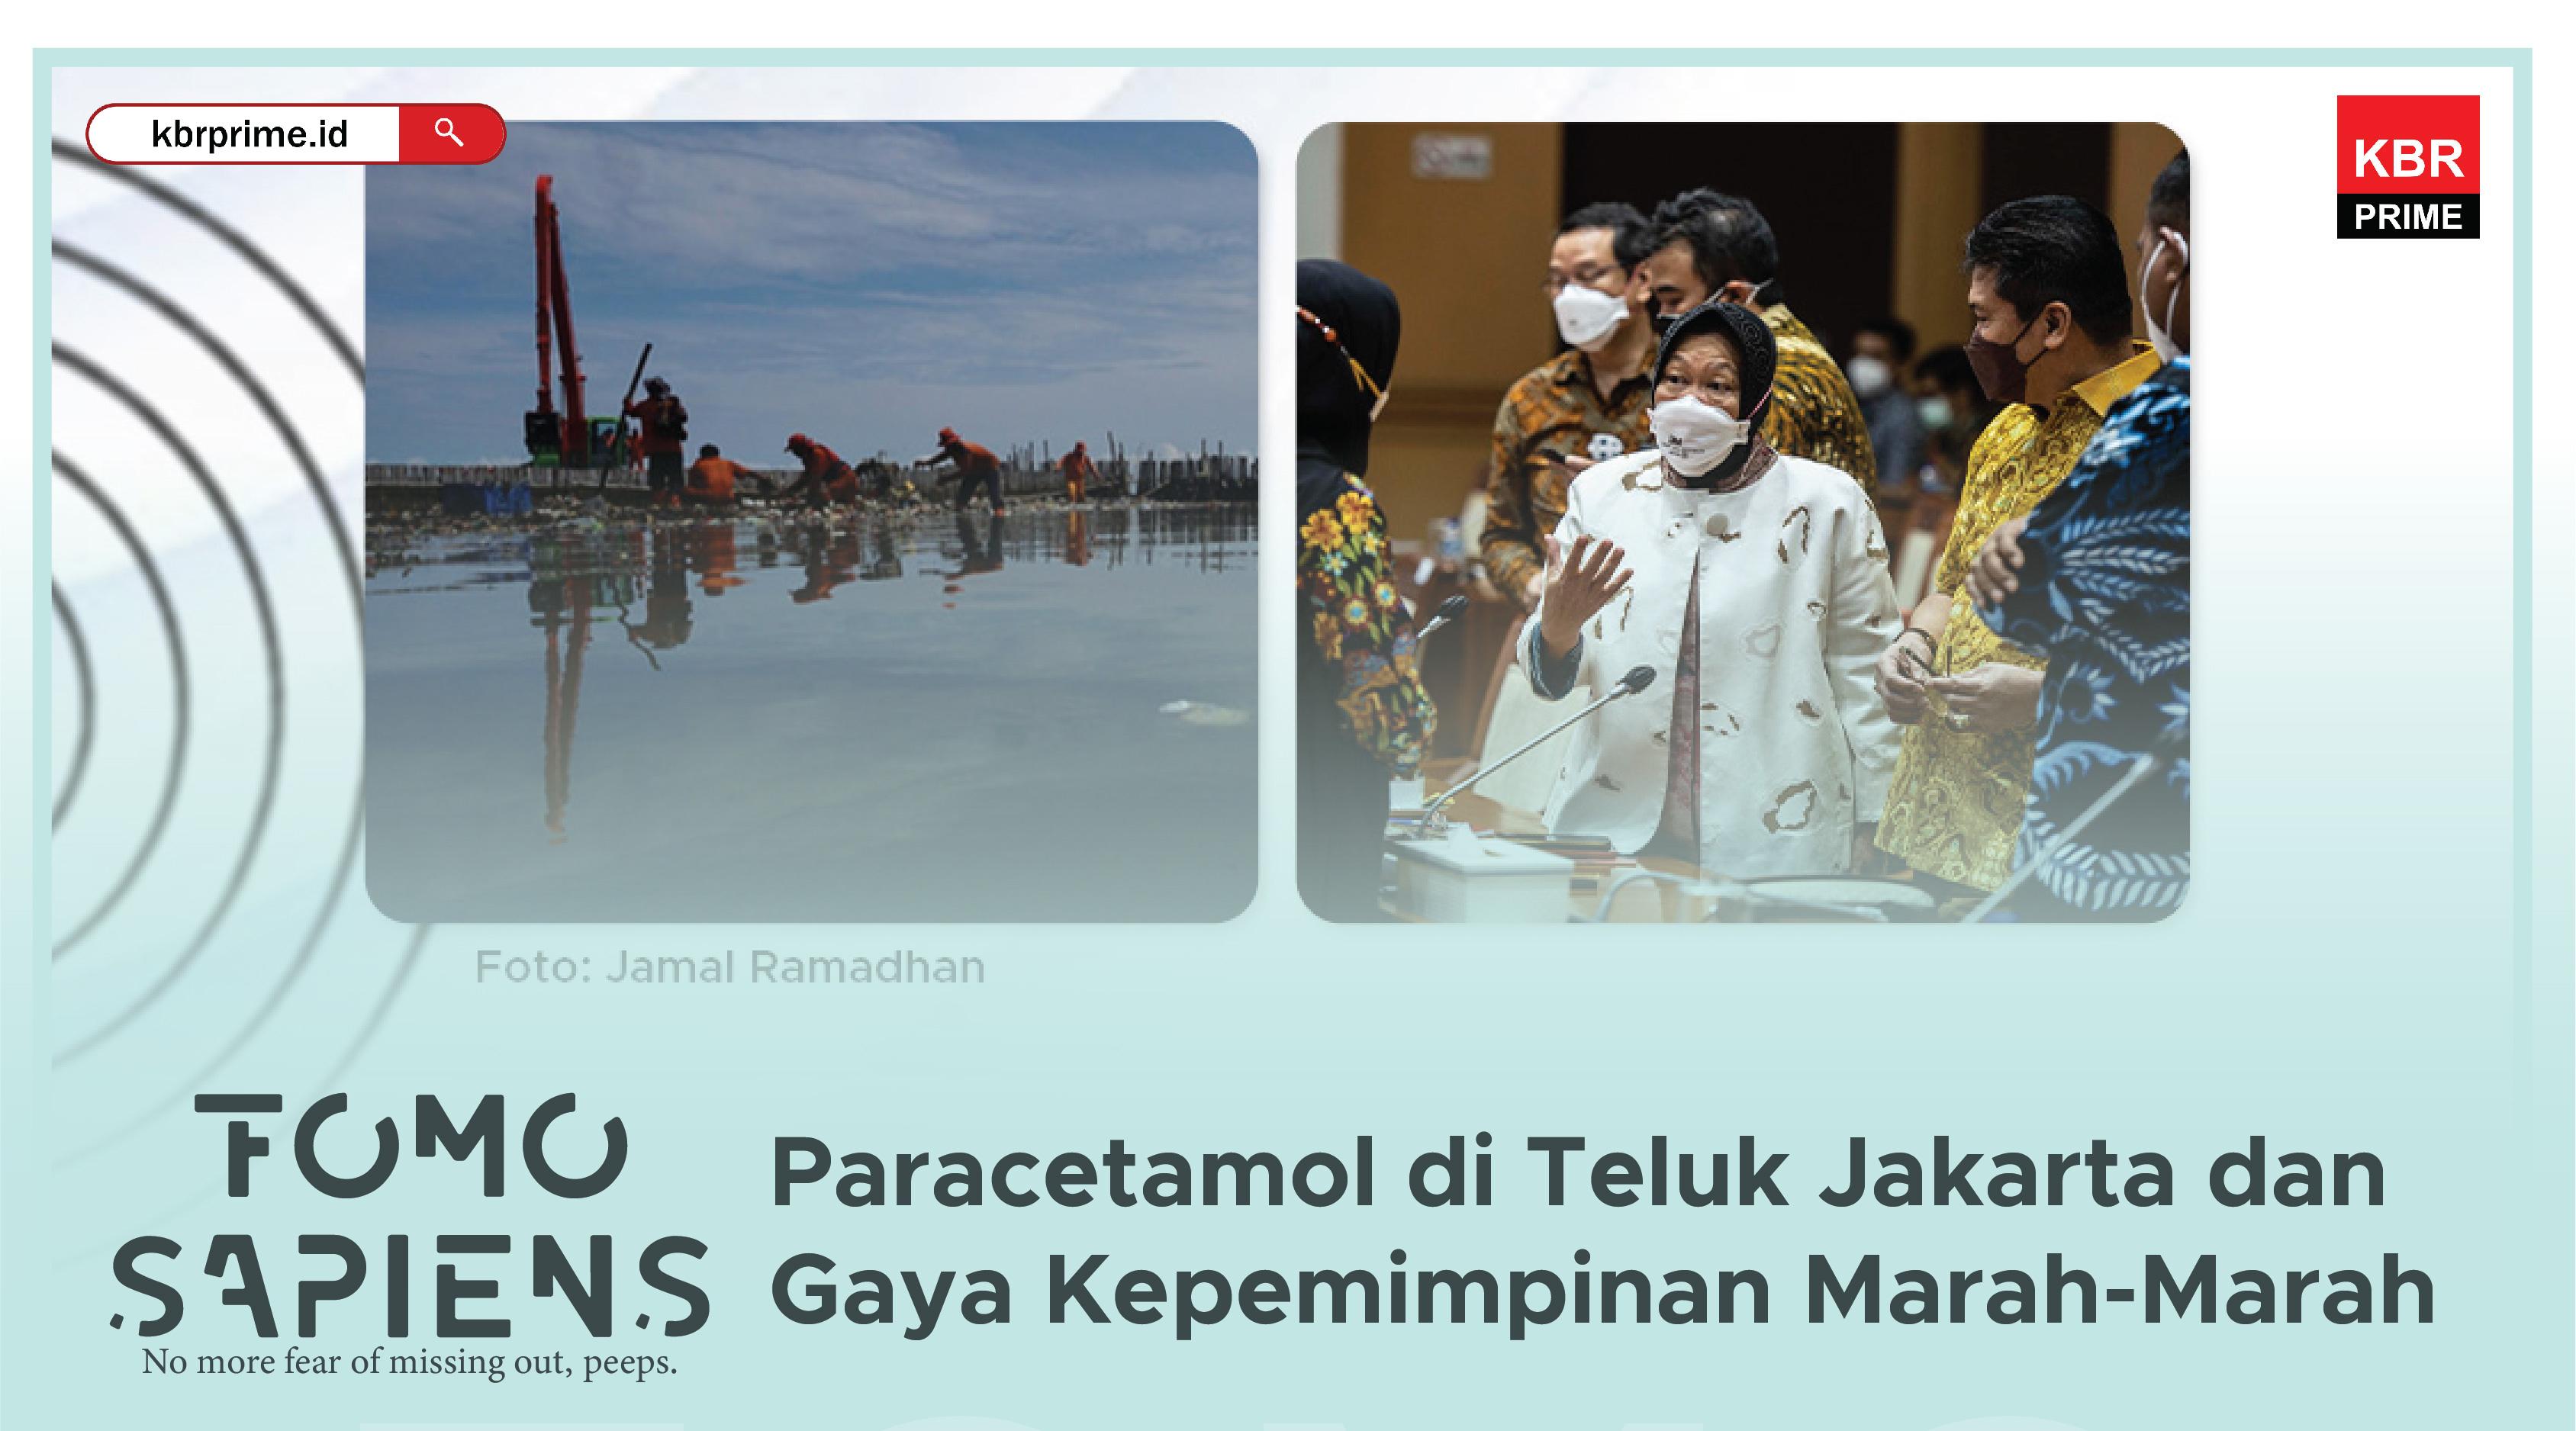 FOMO Sapiens : Paracetamol di Teluk Jakarta dan Gaya Kepemimpinan Marah-Marah